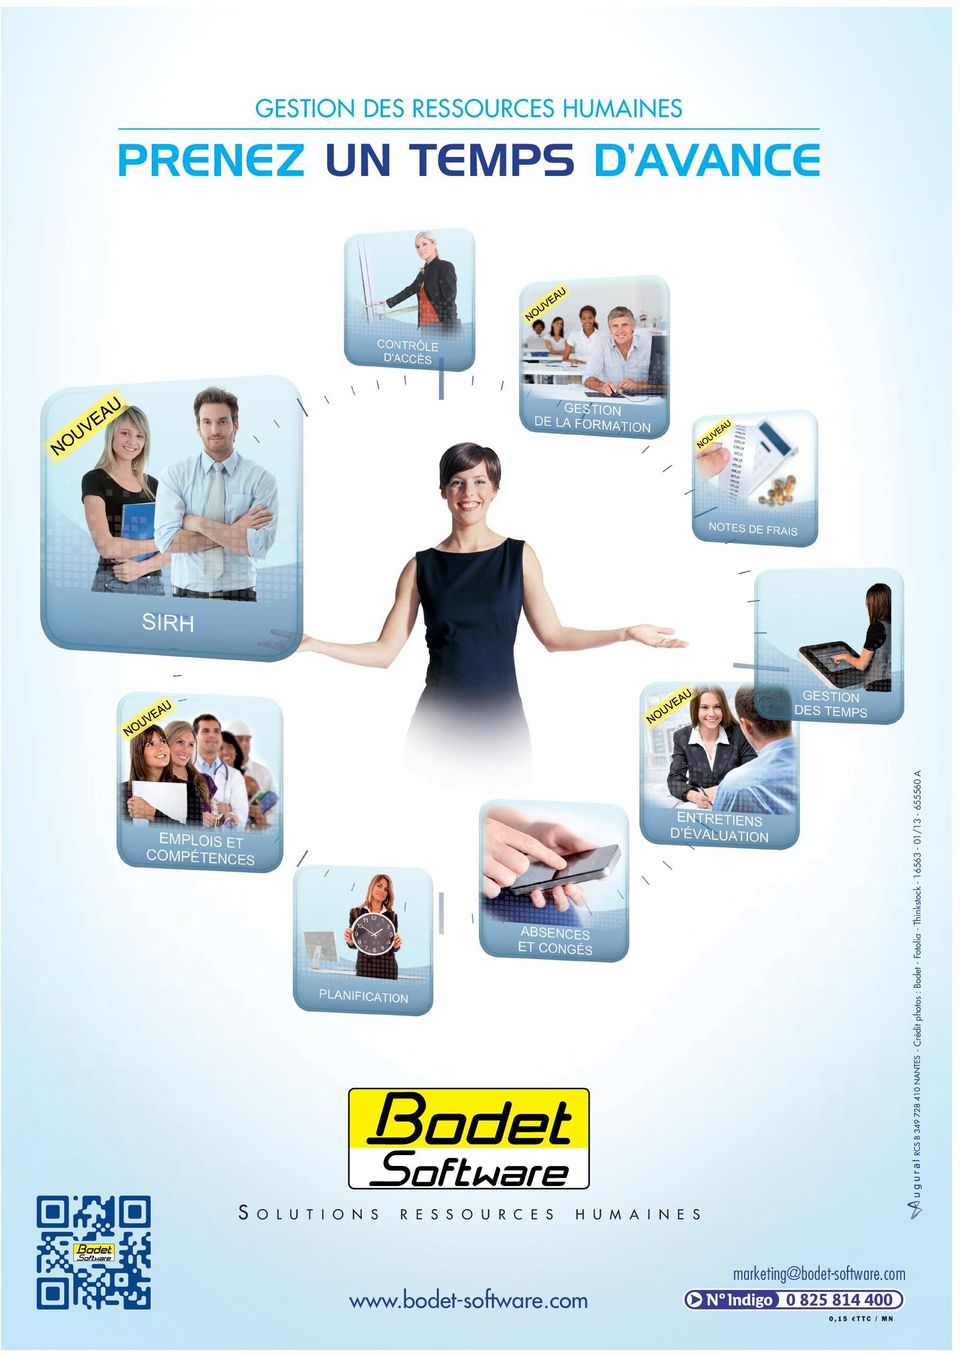 S H U M A I N E S marketing@bodet-software.com www.bodet-software.com Livret Bodet-26022013 pages.